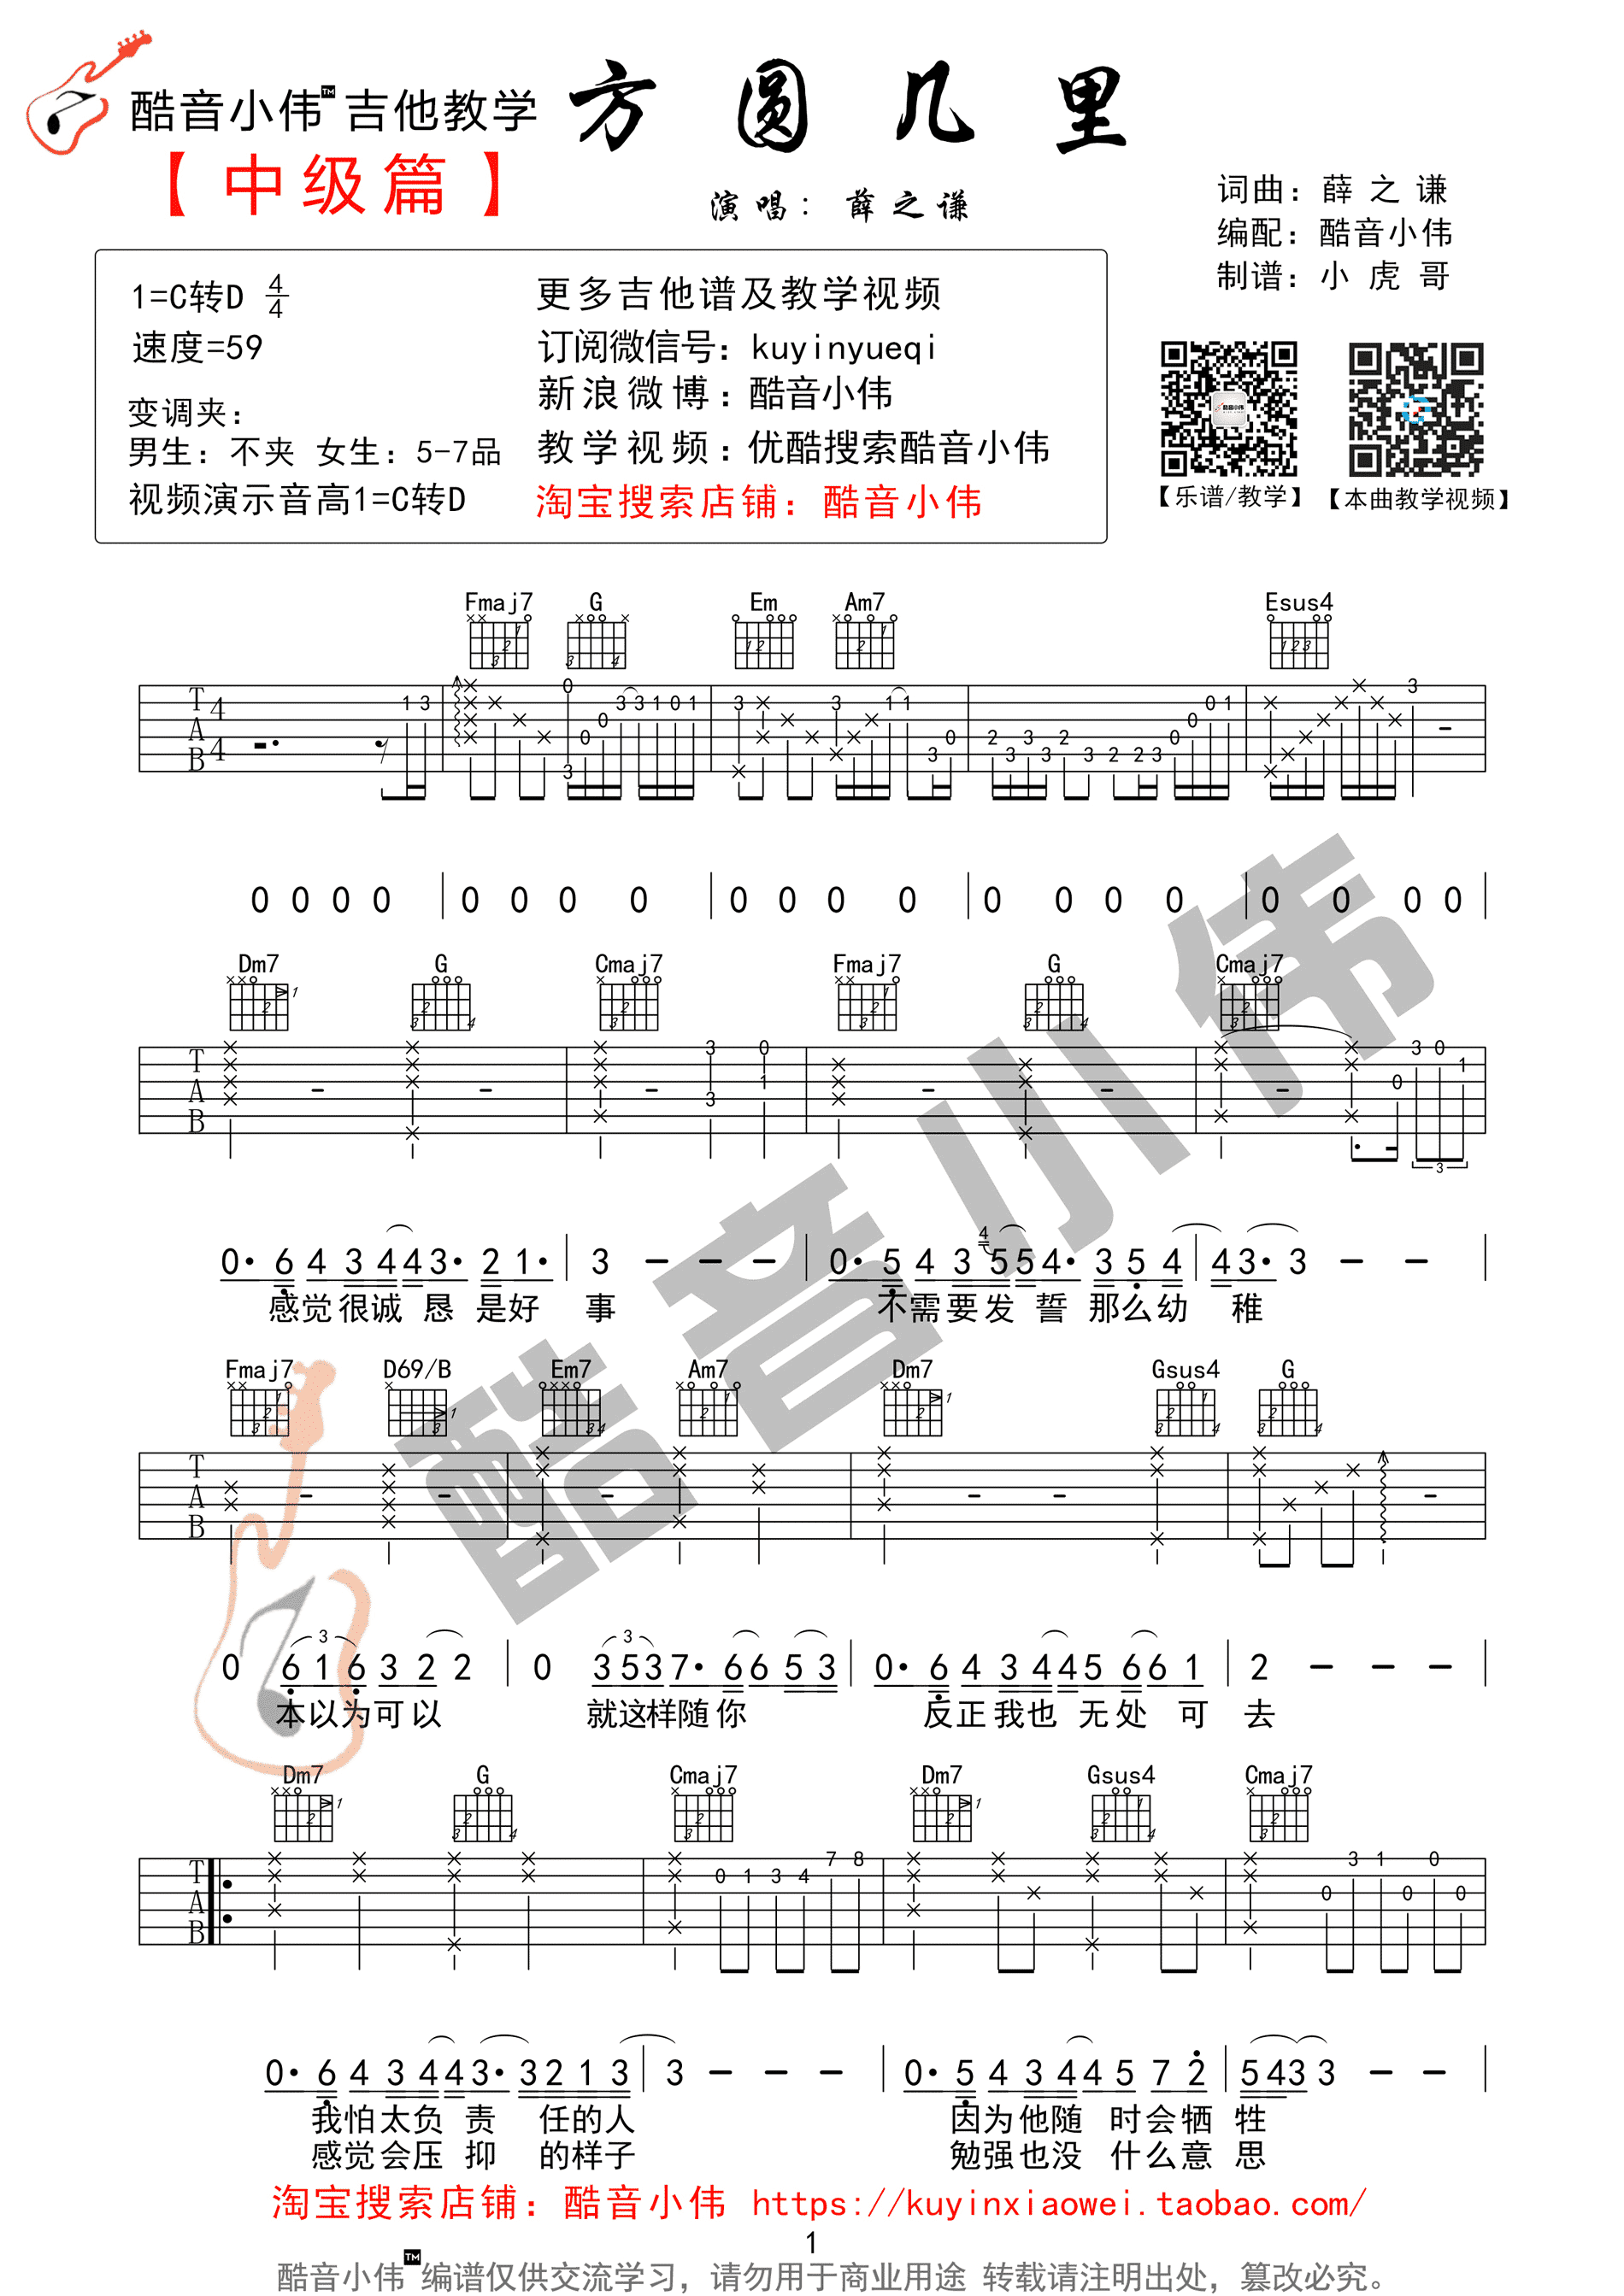 伍佰&China Blue - Last Dance(初级进阶版酷音小伟吉他教学) [酷音小伟 弹唱] 吉他谱